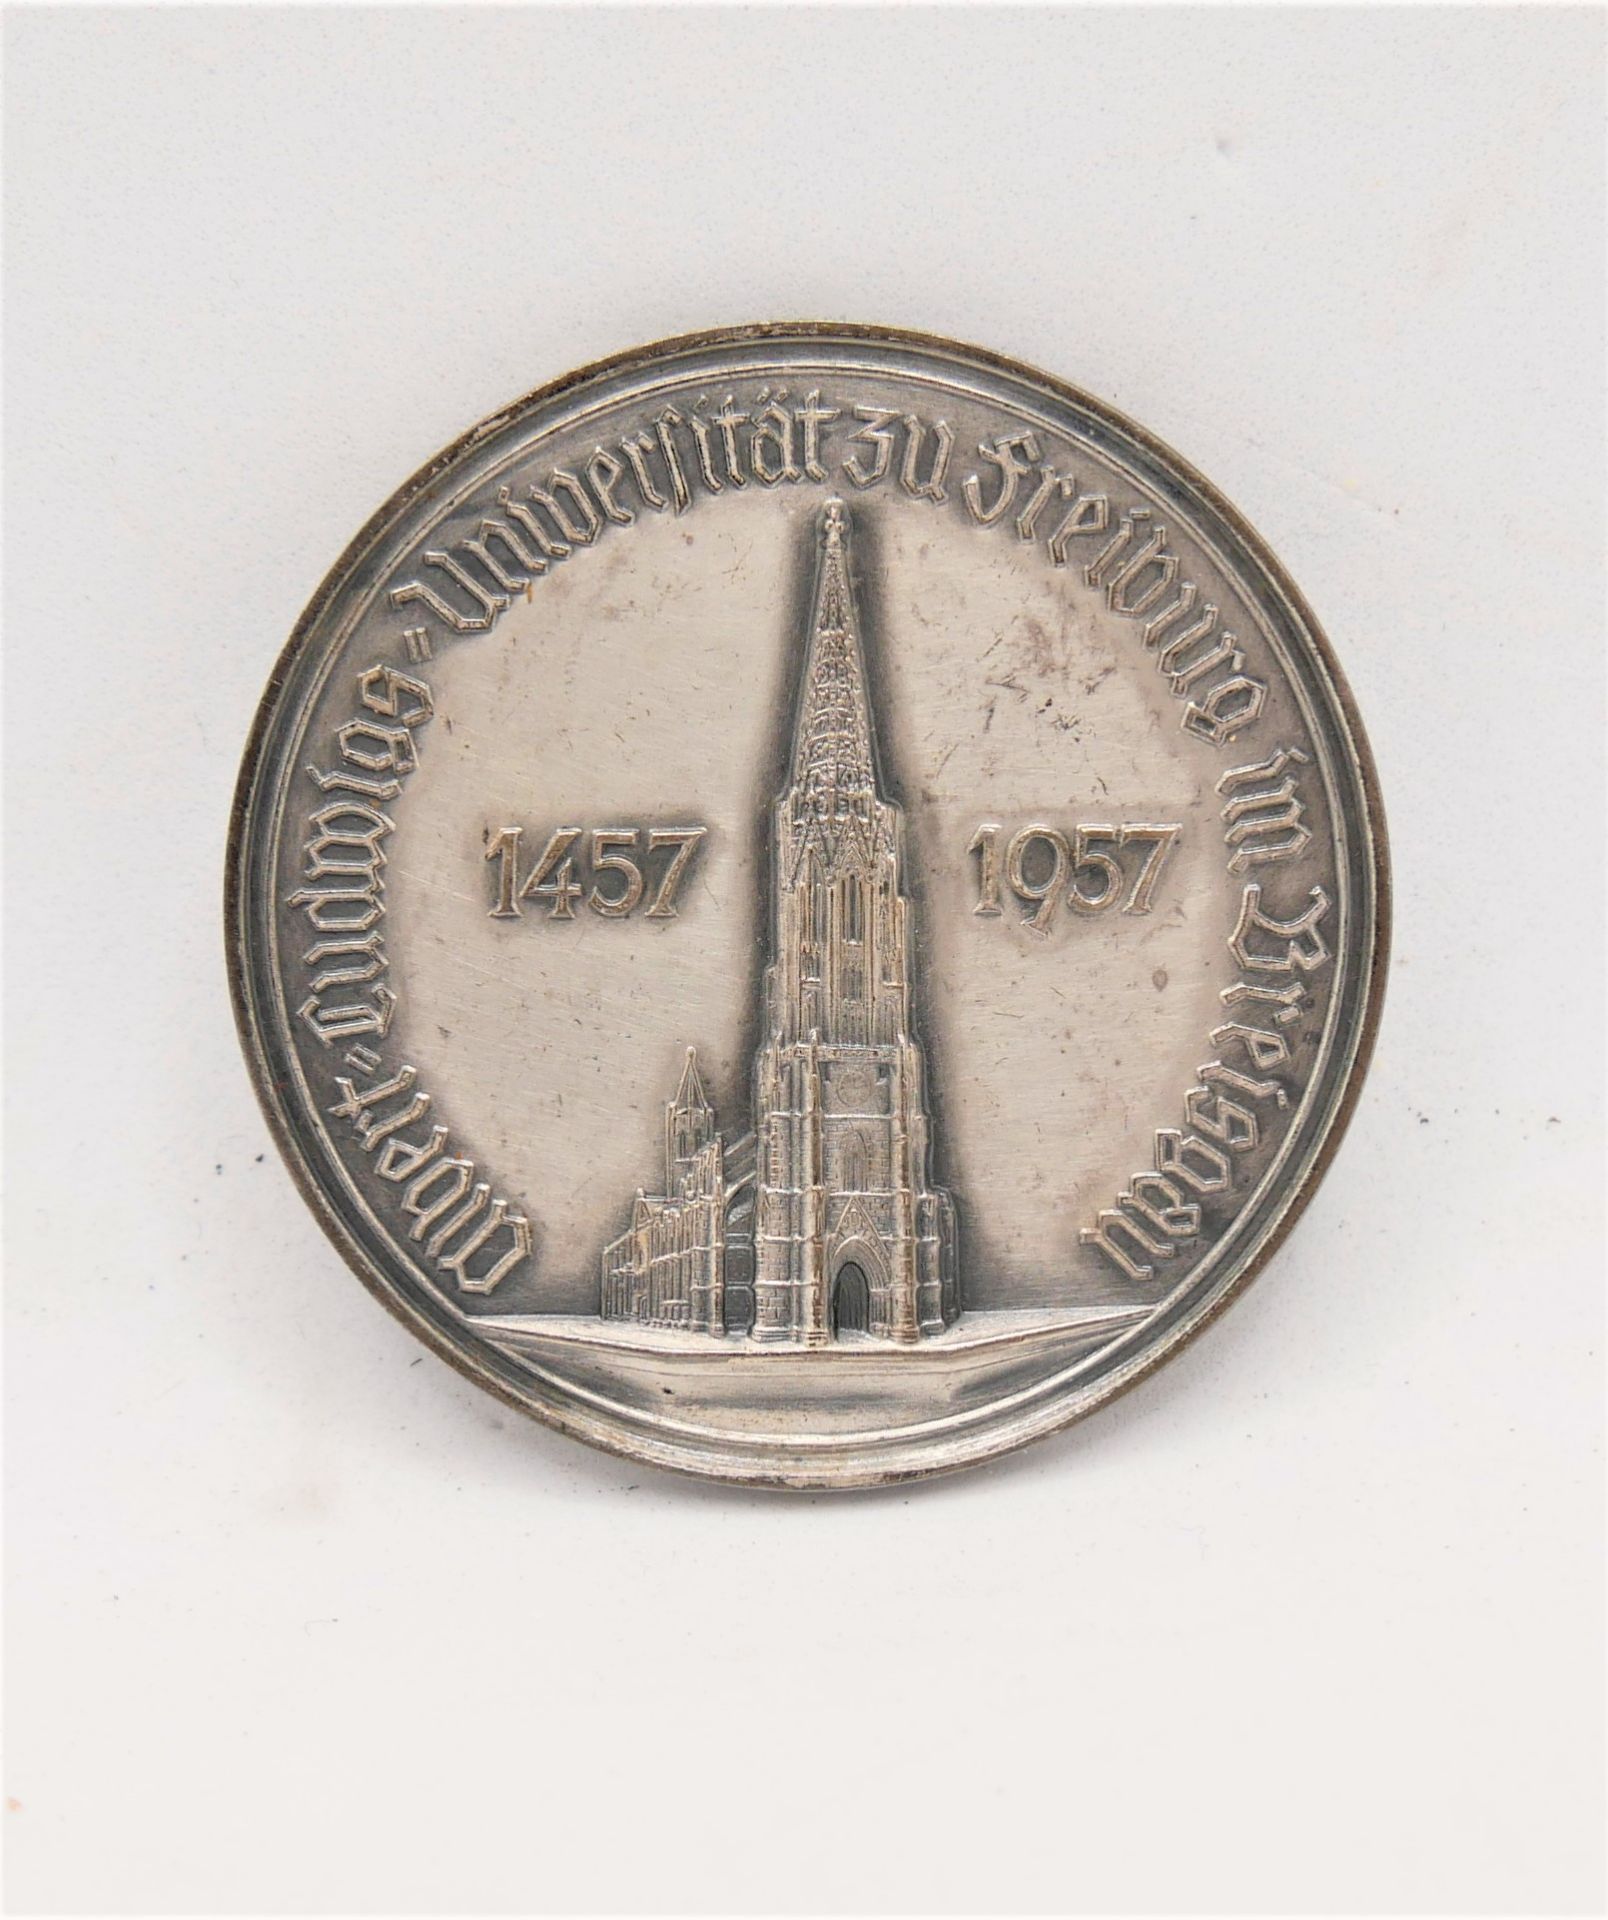 Freiburg Medaille, 1957, 500 Jahre Uni Freiburg. 1000er Silber, Gewicht ca. 47,7 gr, 1000er Punze. - Image 3 of 4